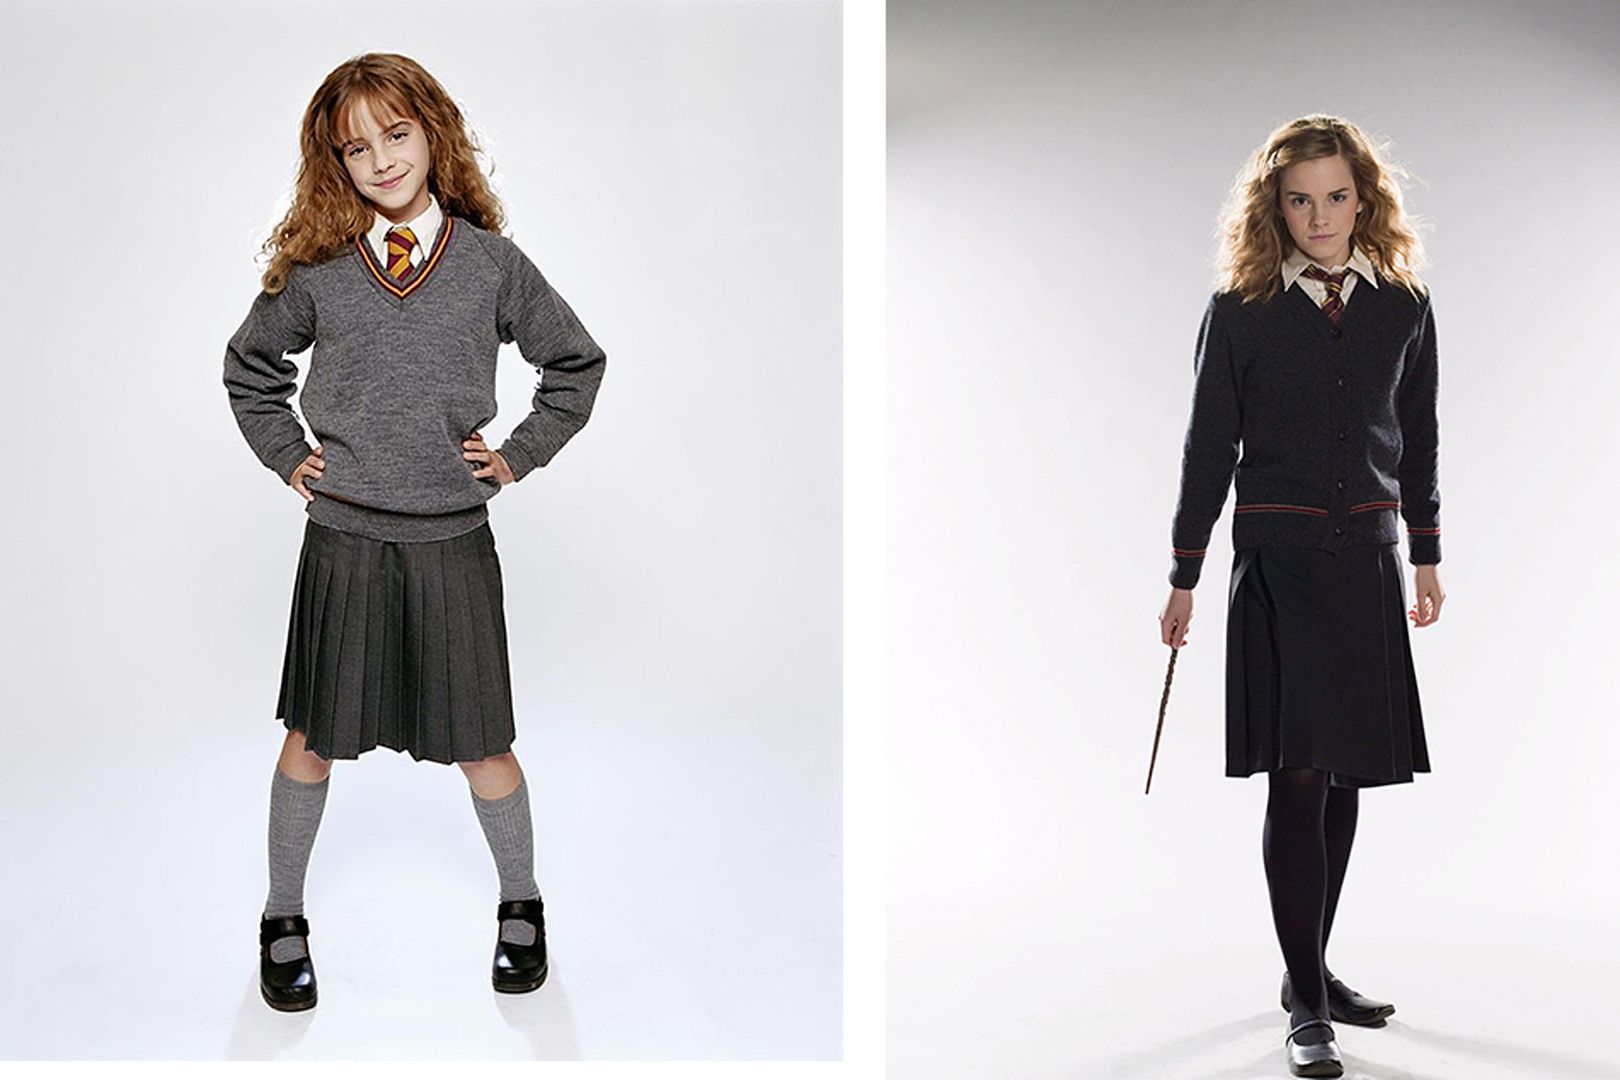 Uniform hermione granger - 🧡 gryffindor uniform hermione - Google Search H...